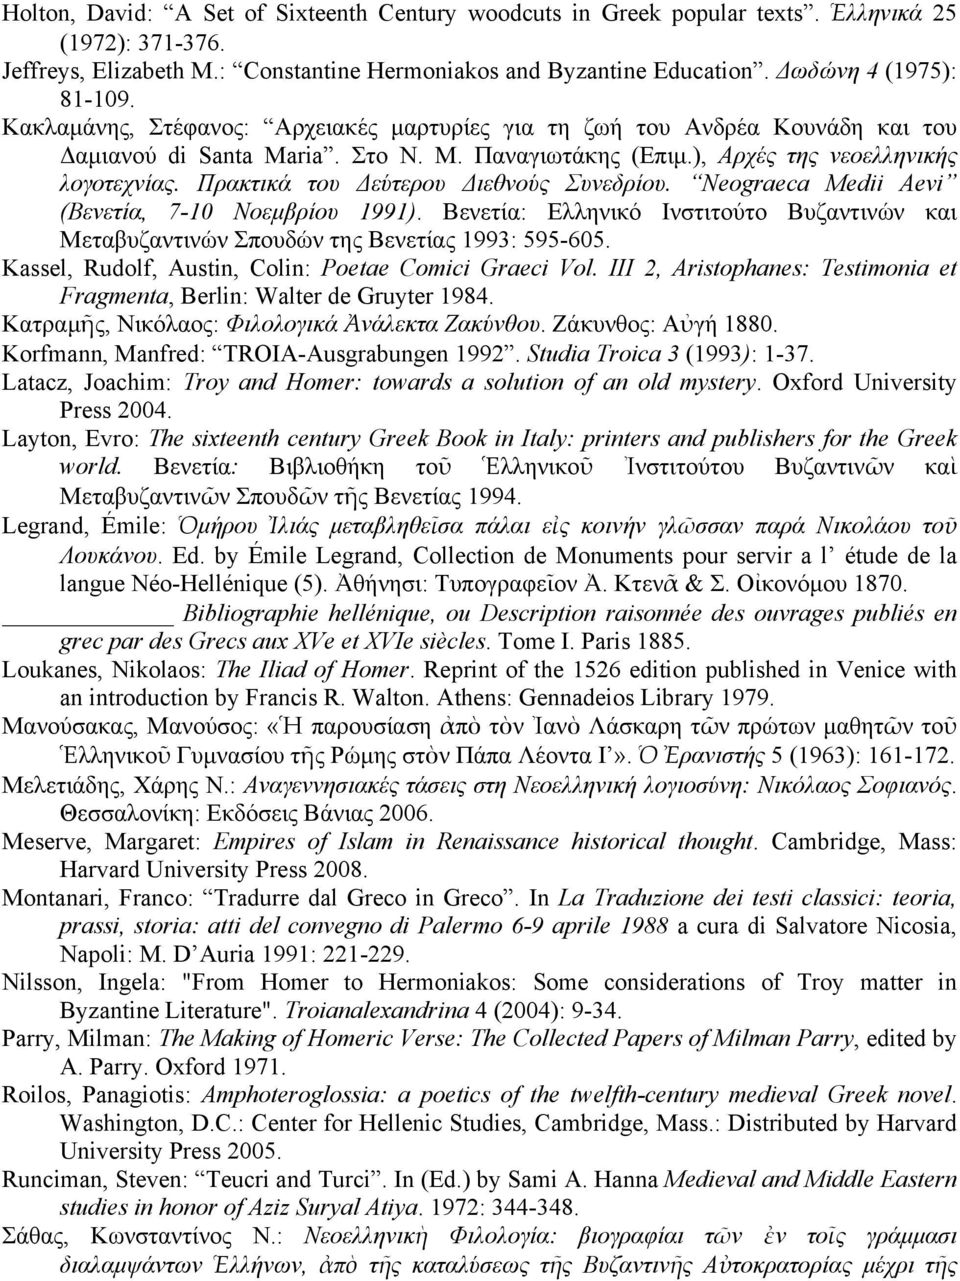 Πρακτικά του Δεύτερου Διεθνούς Συνεδρίου. Neograeca Medii Aevi (Βενετία, 7-10 Νοεµβρίου 1991). Βενετία: Ελληνικό Ινστιτούτο Βυζαντινών και Μεταβυζαντινών Σπουδών της Βενετίας 1993: 595-605.